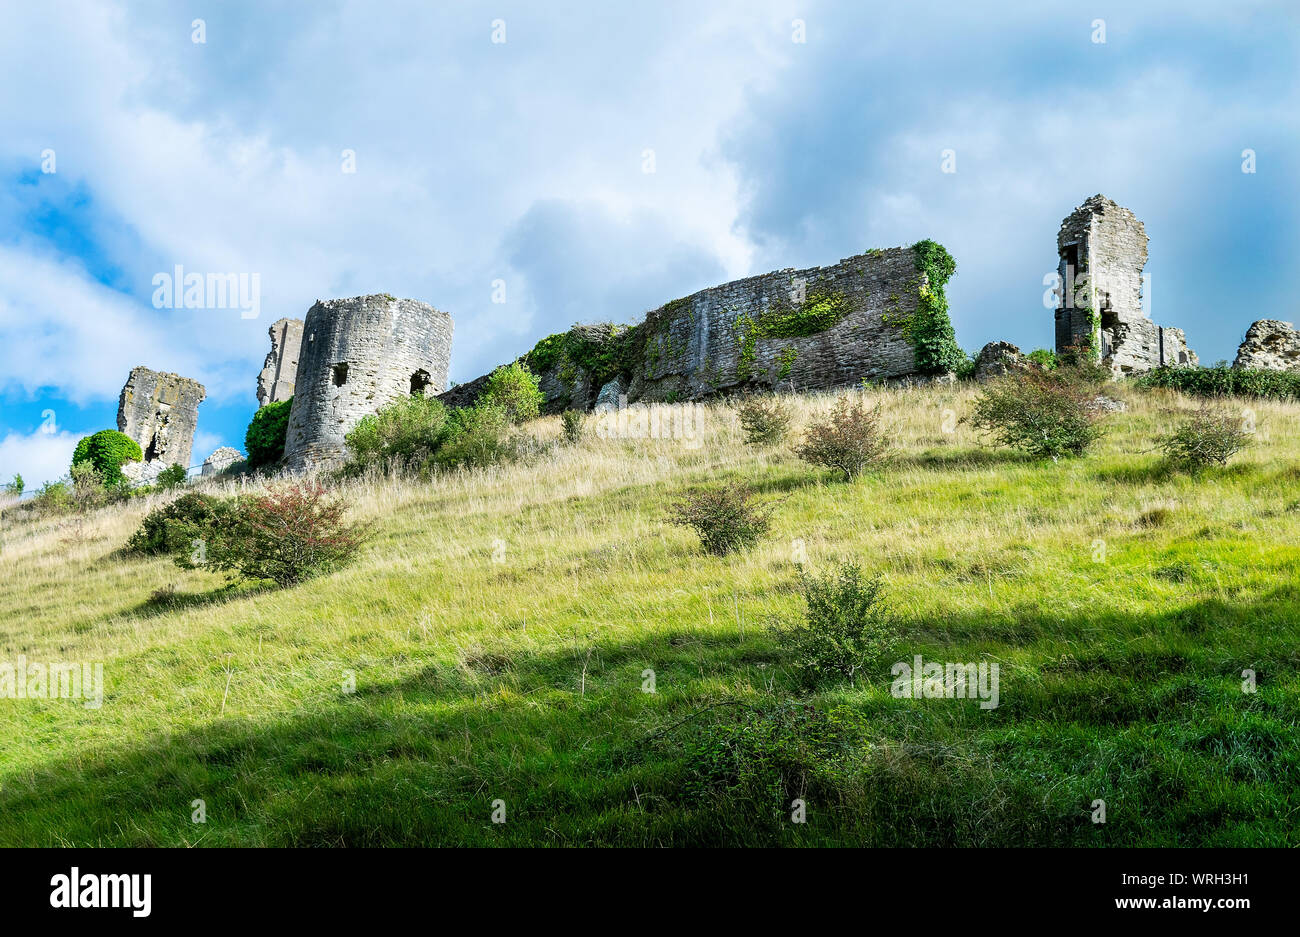 Le village historique de Corfe, Dorset, England, UK . Le château en ruine se dresse sur les collines de Purbeck, surplombant le village Banque D'Images